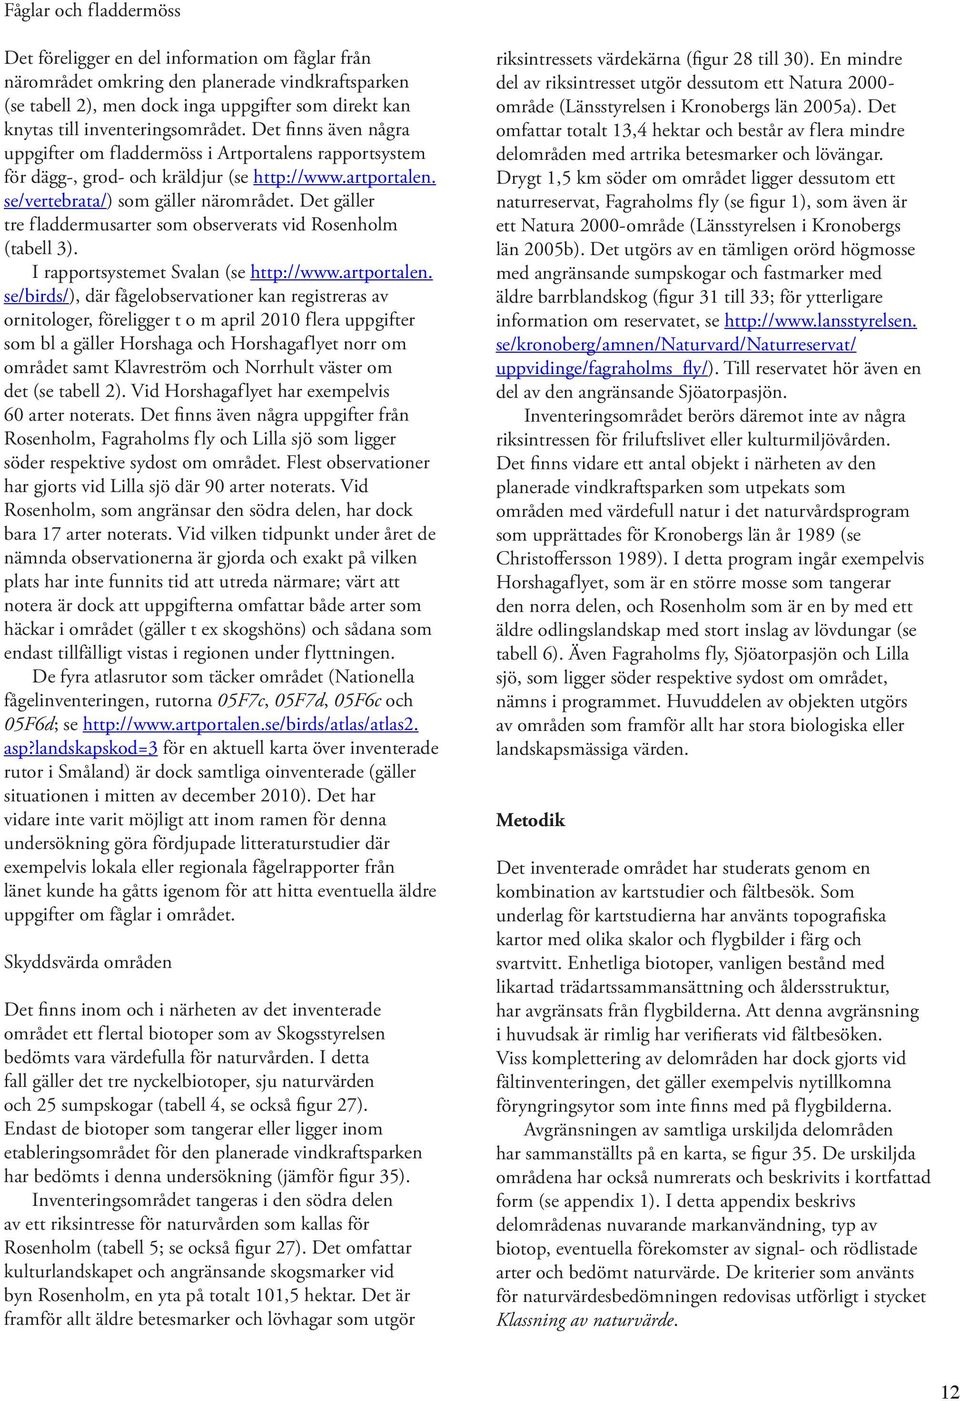 Det gäller tre fladdermusarter som observerats vid Rosenholm (tabell 3). I rapportsystemet Svalan (se http://www.artportalen.